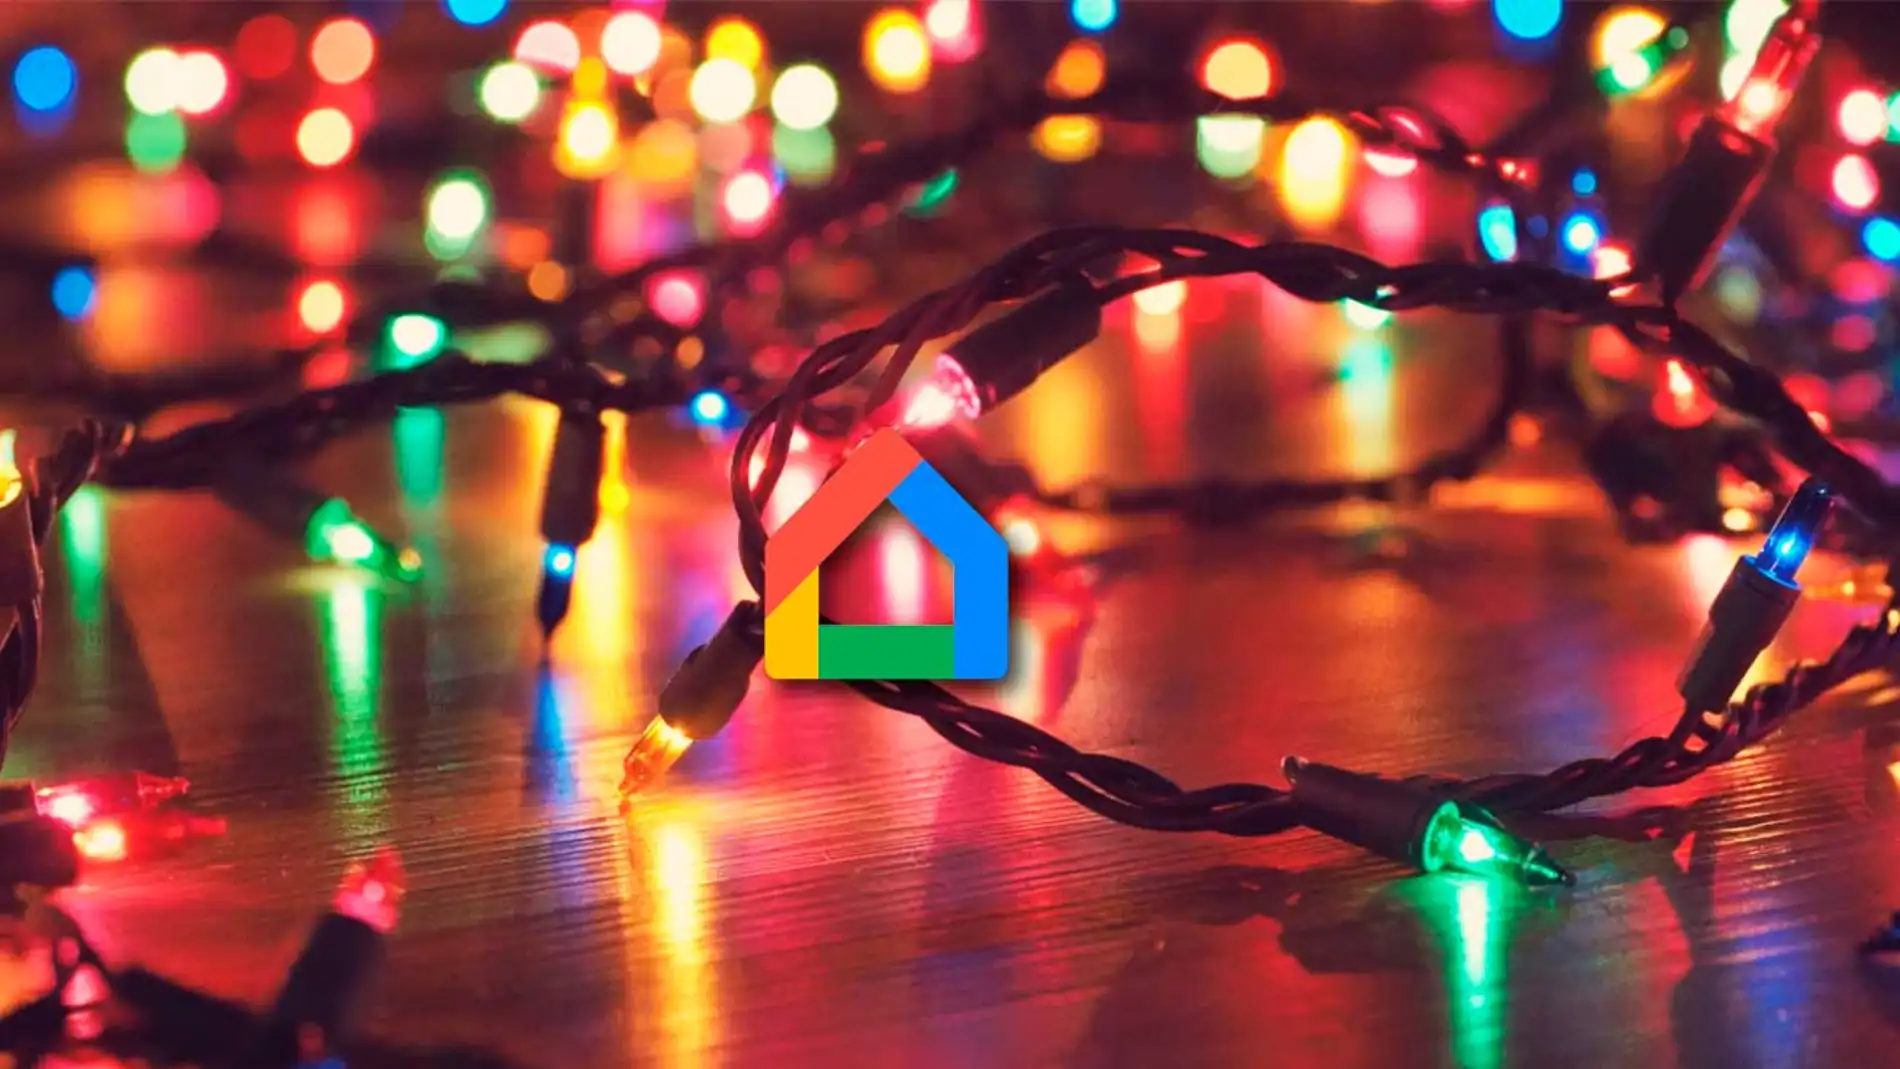 Rutina encendido luces navideñas Google Home